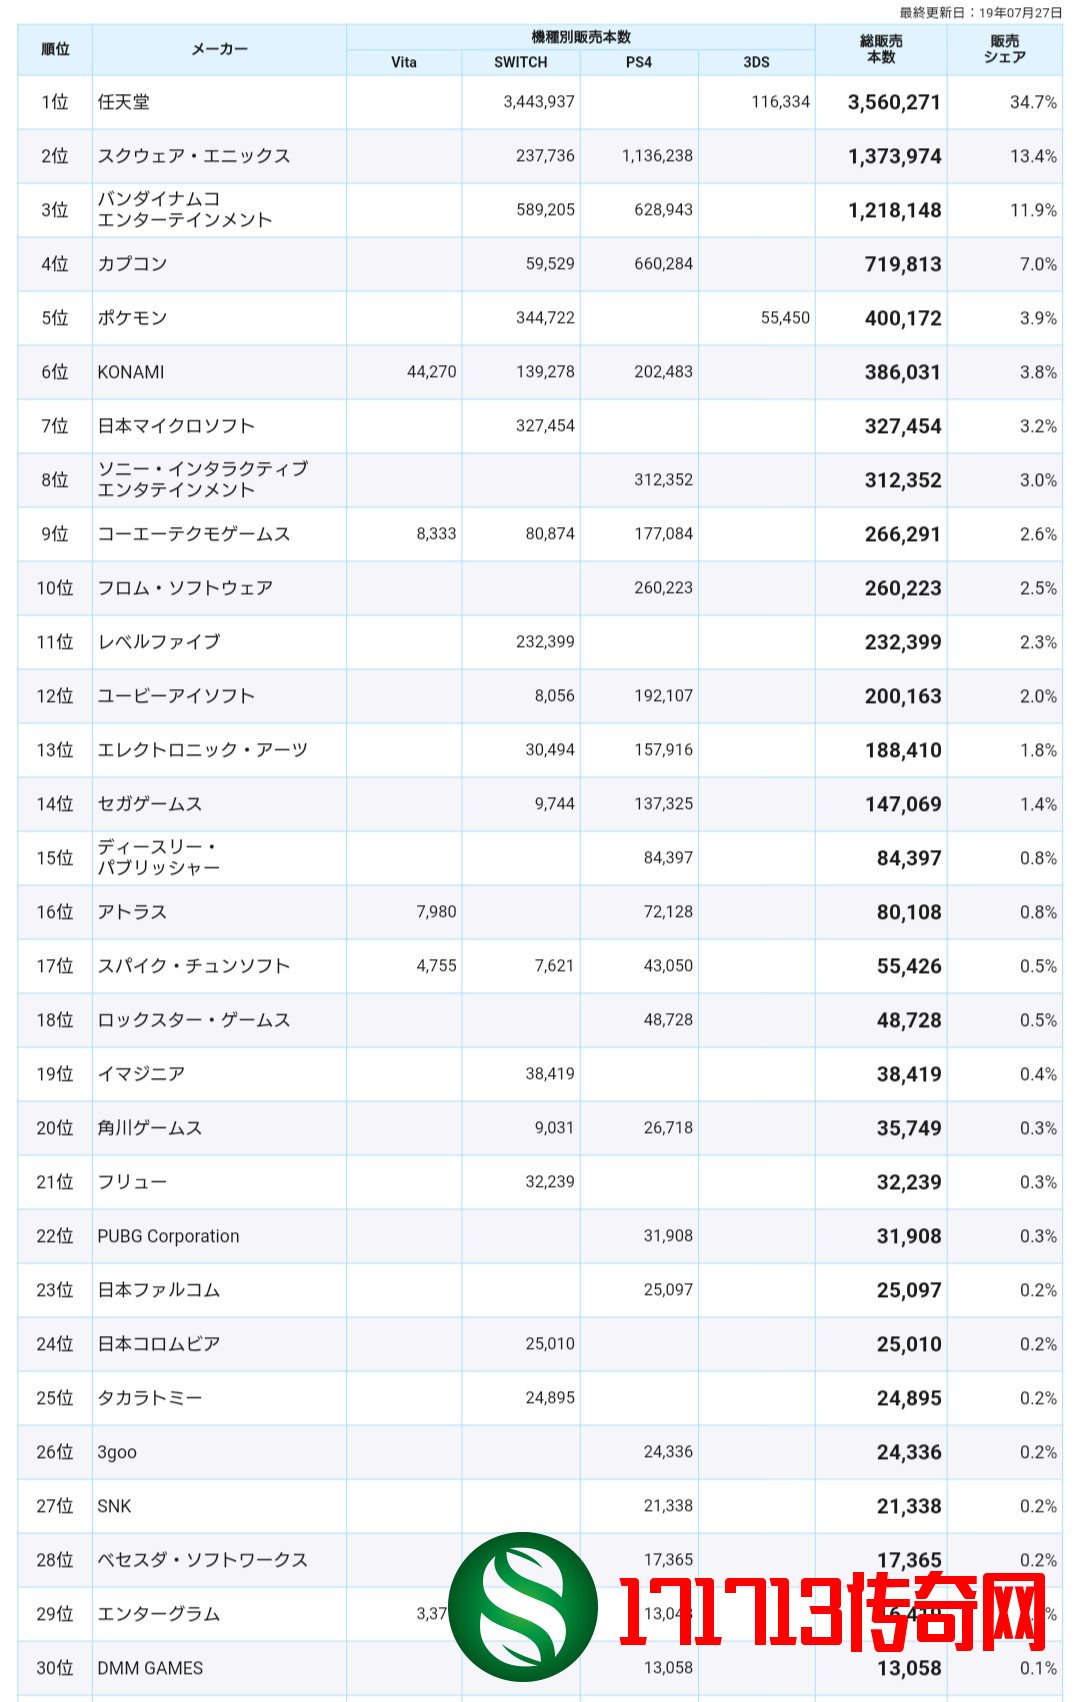 2019年日本游戏销售榜曝出 任天堂强势登顶遥遥领先